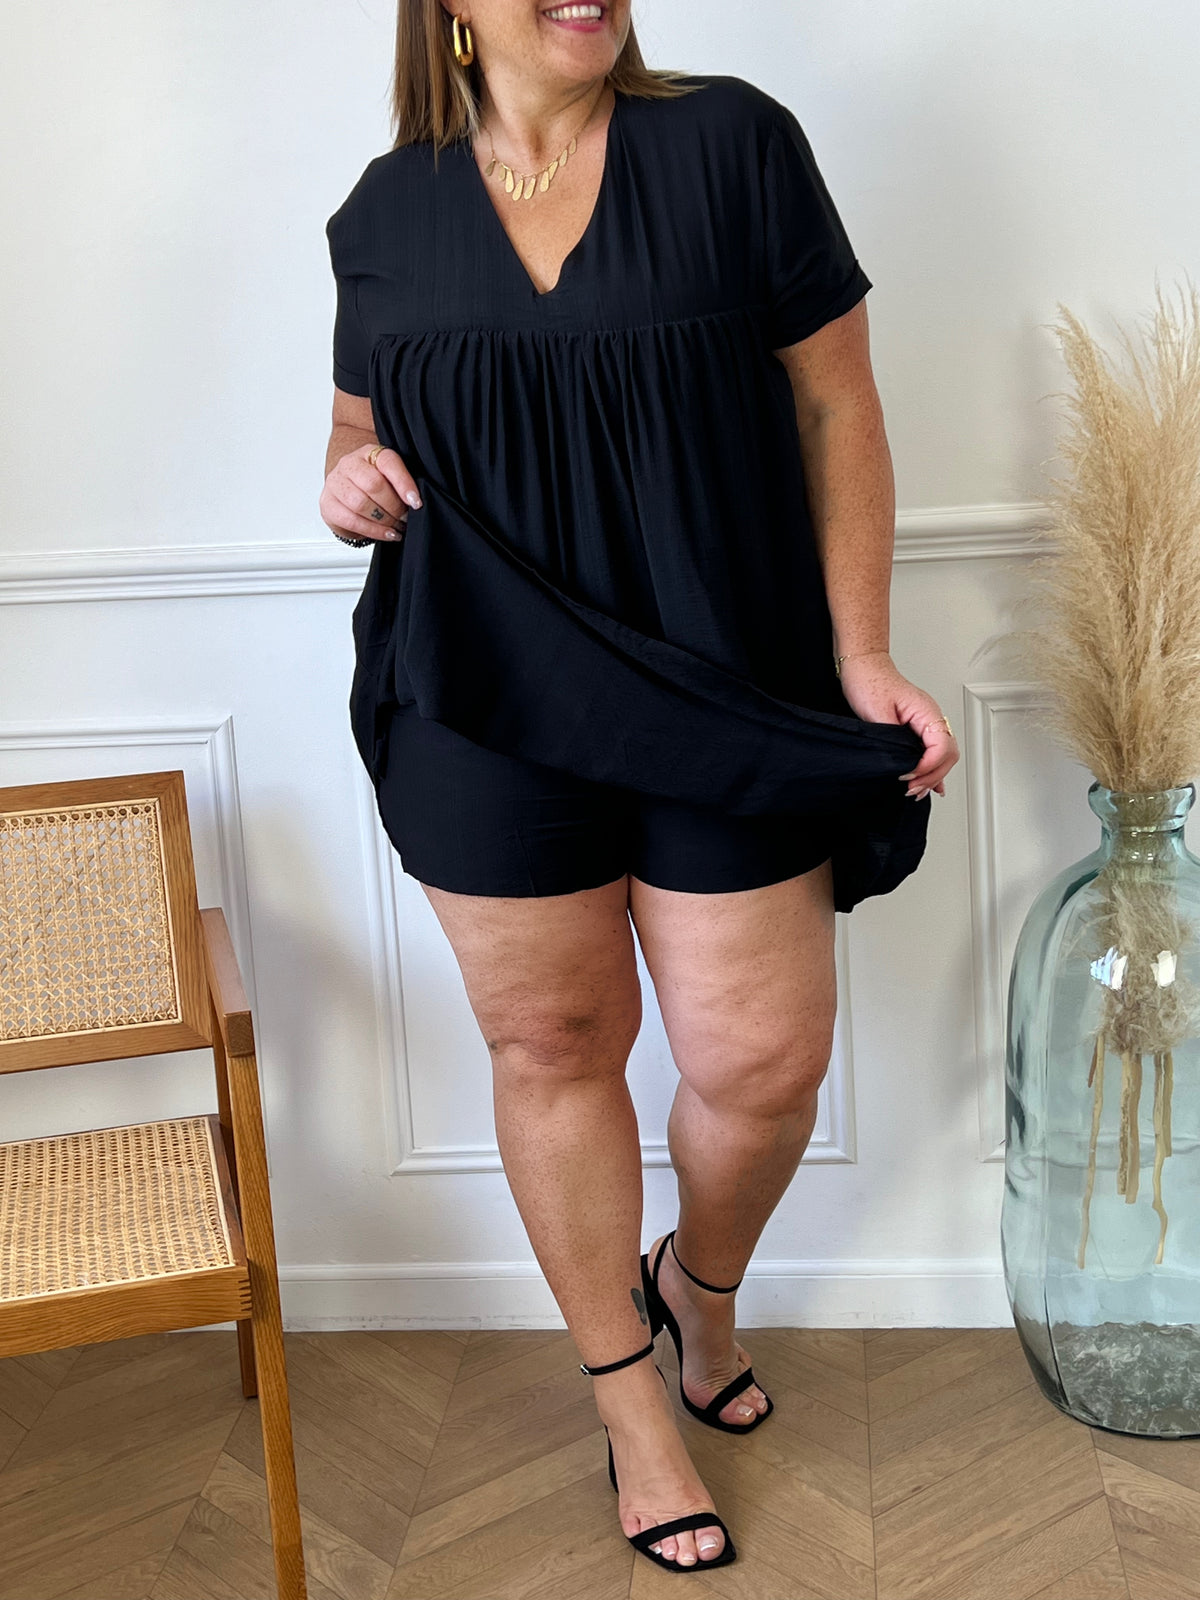 Découvrez notre sensationnelle robe short noire : Oriana ! Avec son col v élégant et son dos nu, elle est parfaite pour toutes les occasions. Soyez à la mode et confortable tout en respirant la confiance en vous !